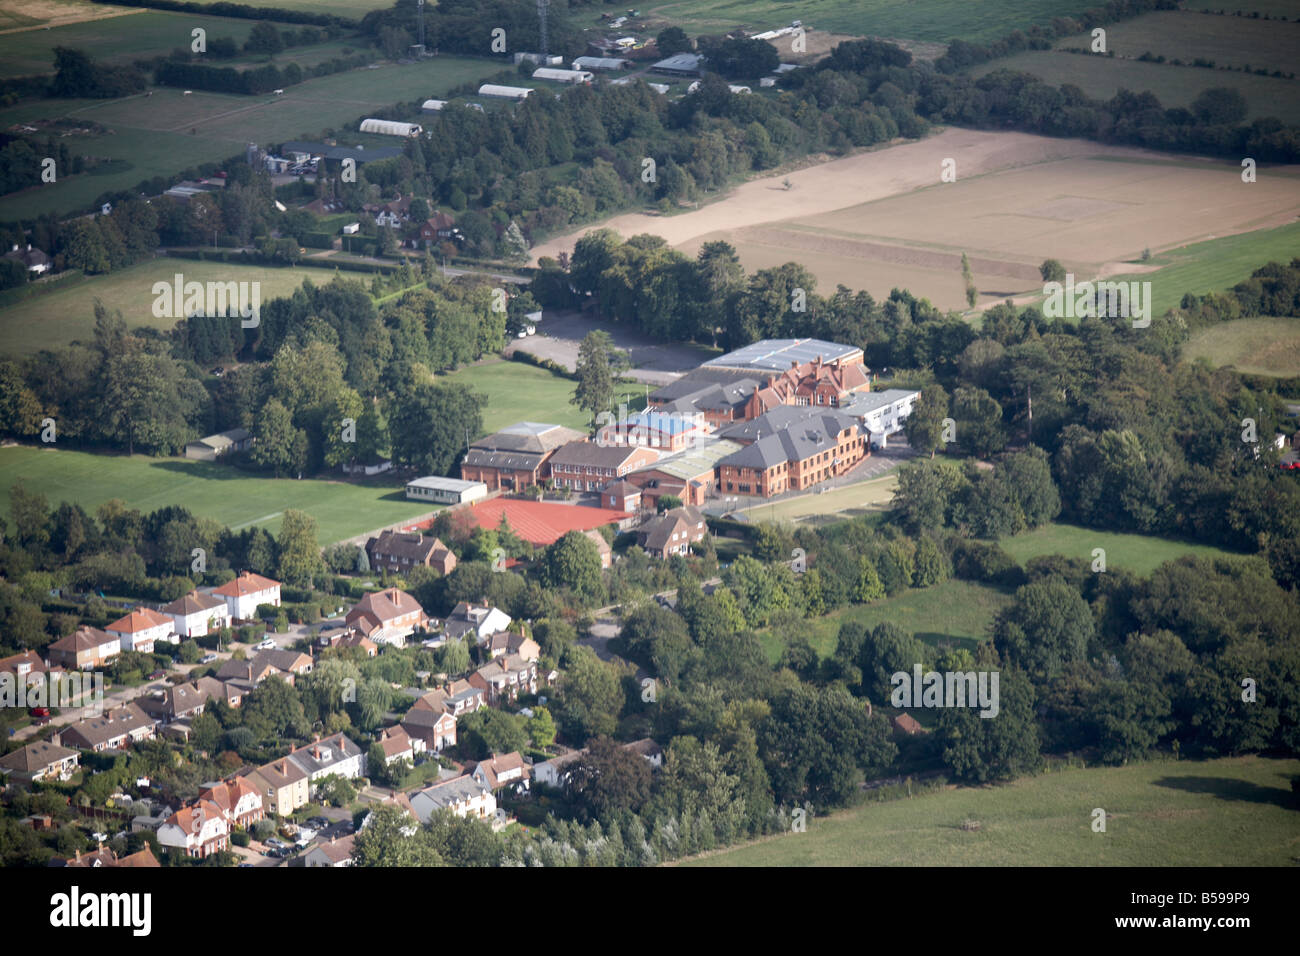 Vue aérienne au sud-est de l'école pays maisons de banlieue Cranmore Epsom champs Road West Horsley Leatherhead Surrey KT24 Angleterre Banque D'Images